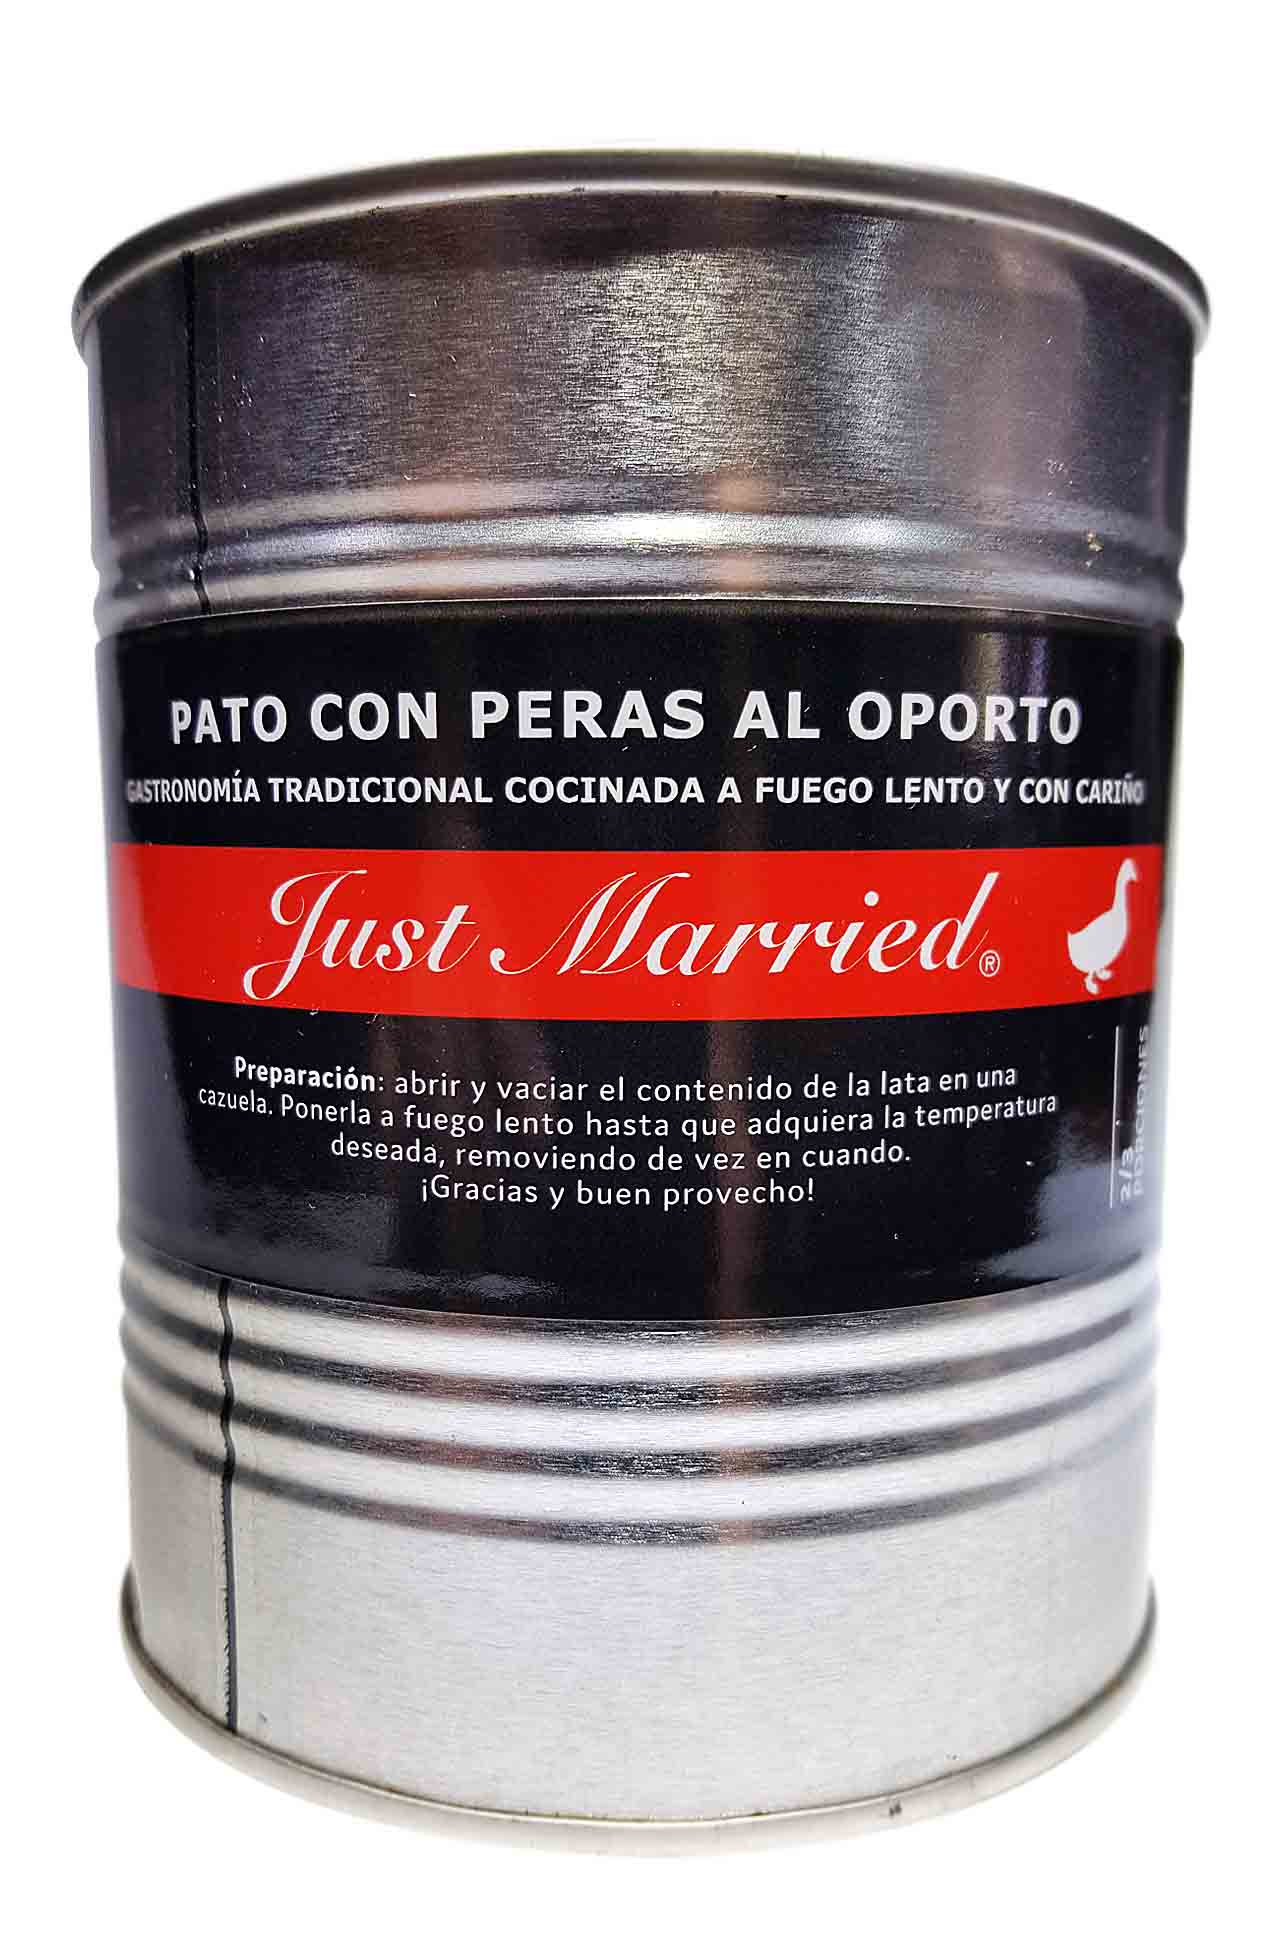 Pato Con Peras Al Oporto Just married